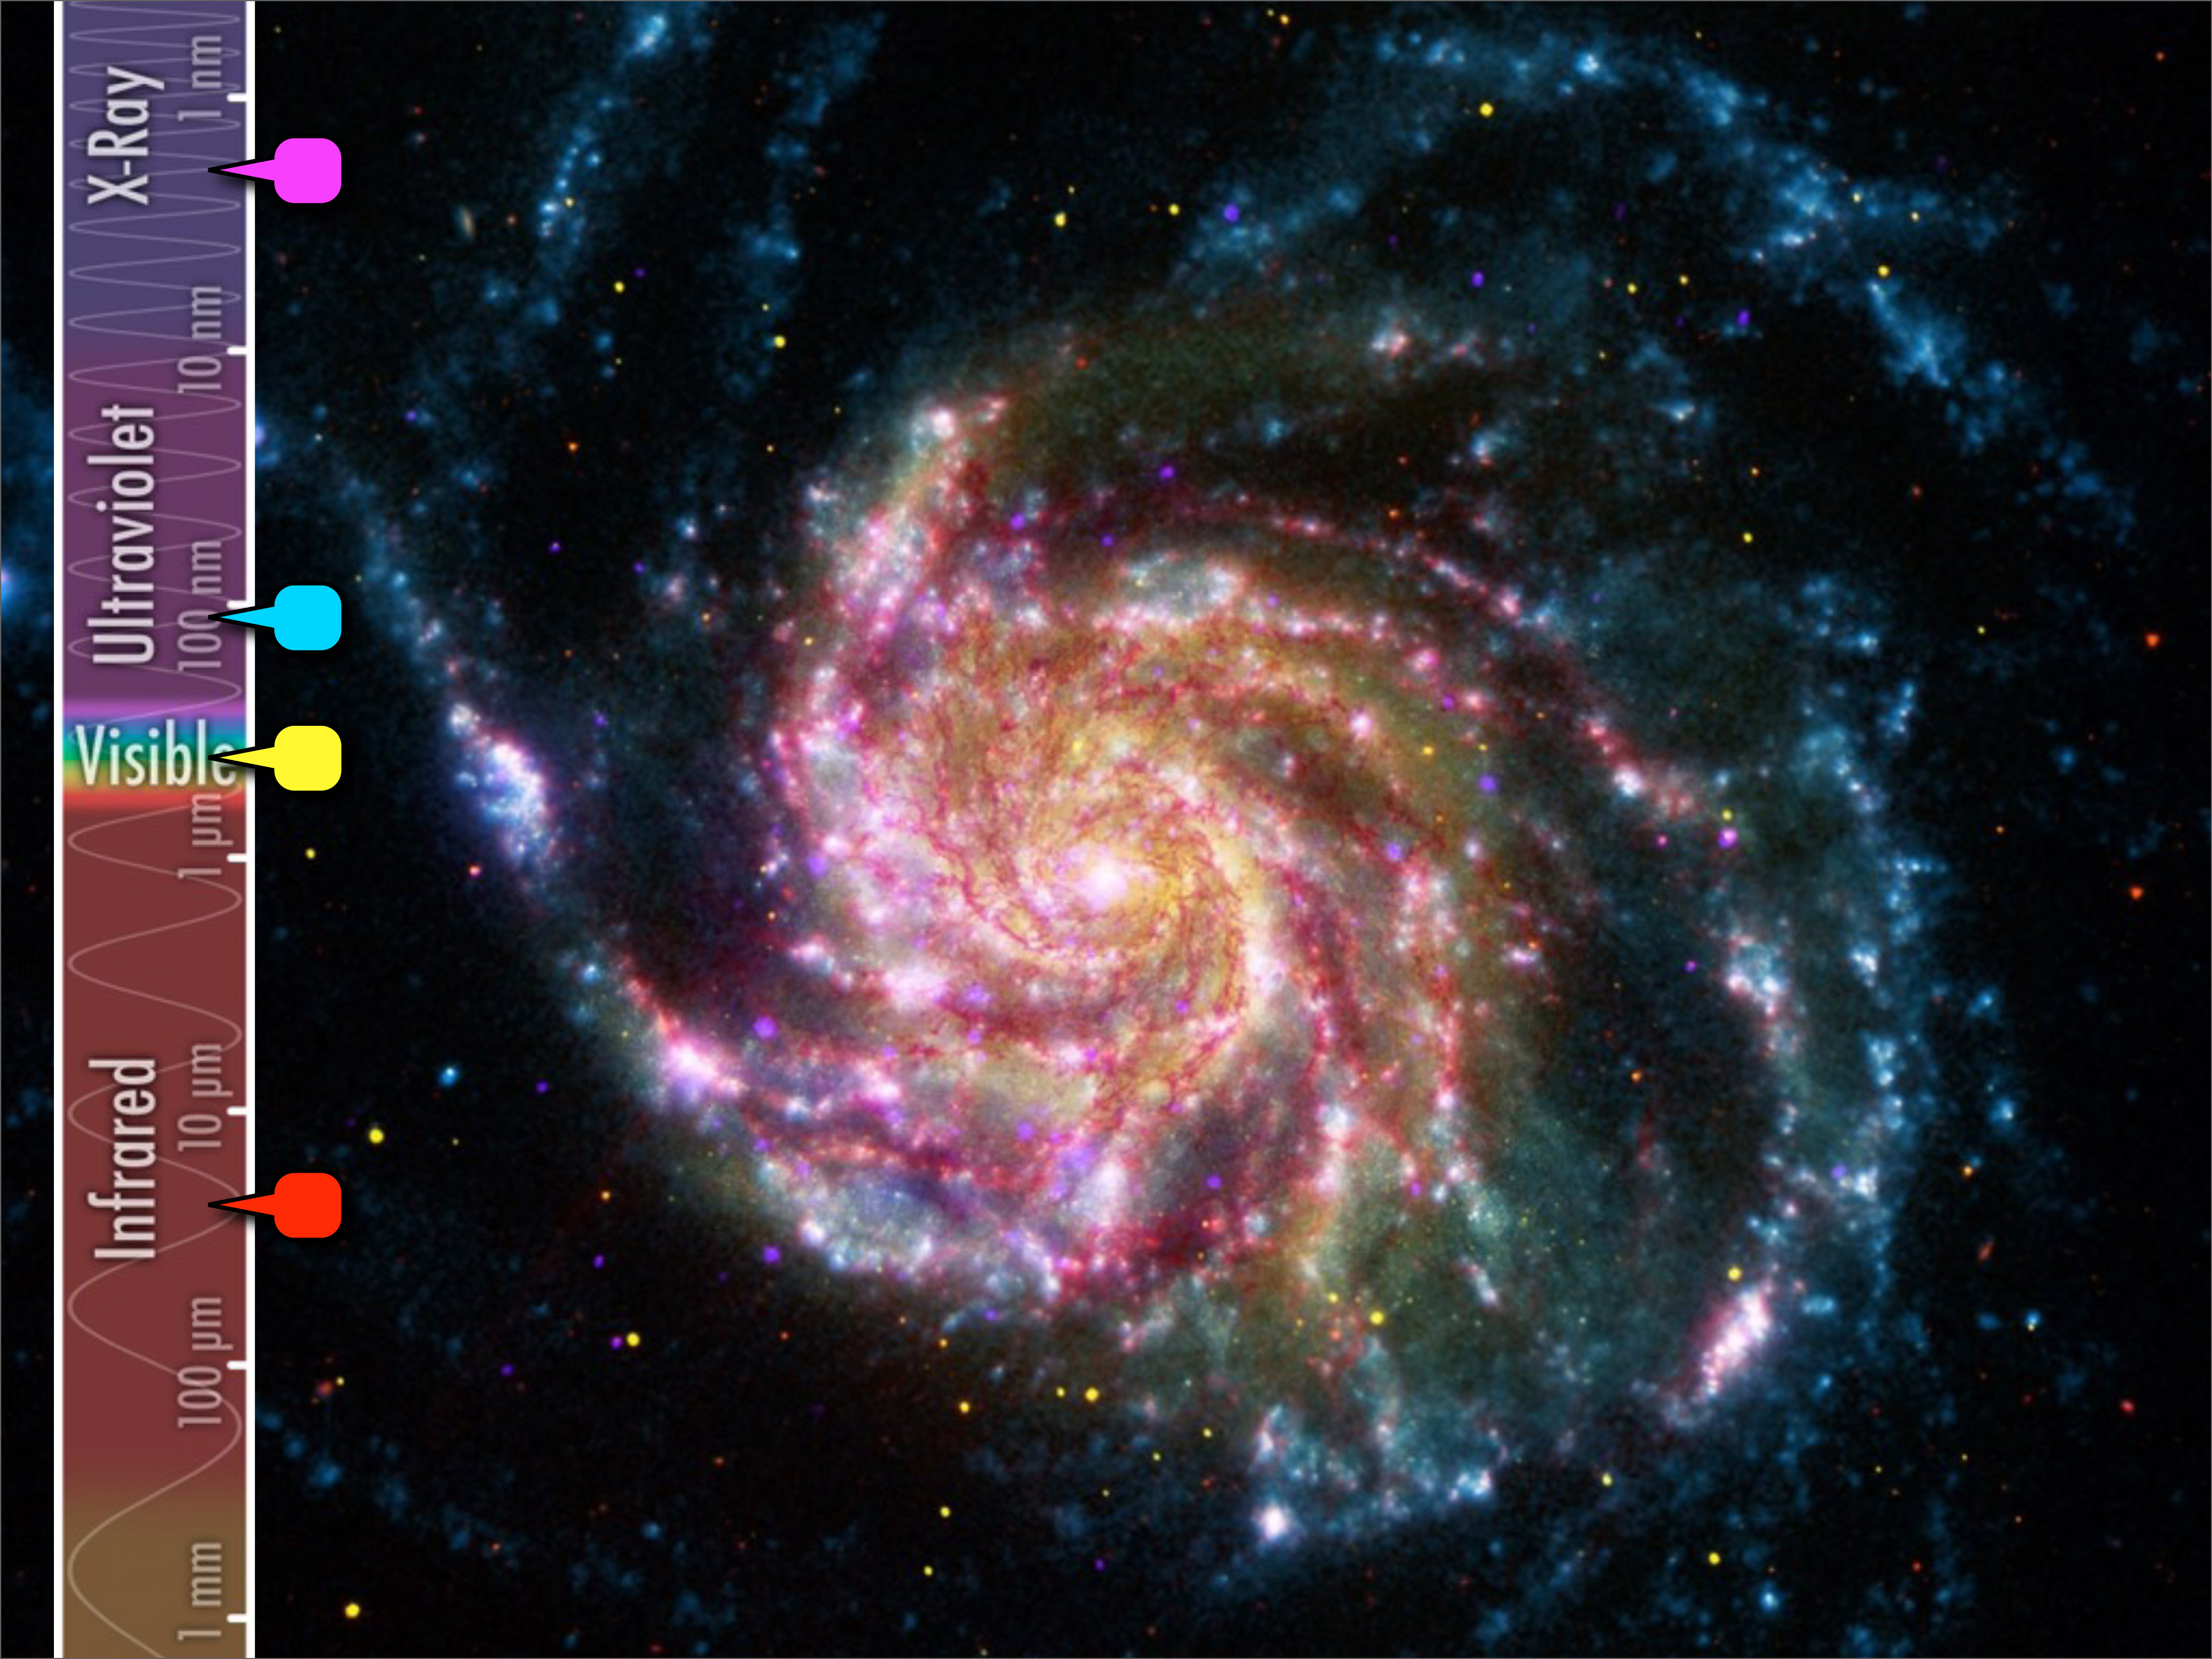 Image of M101